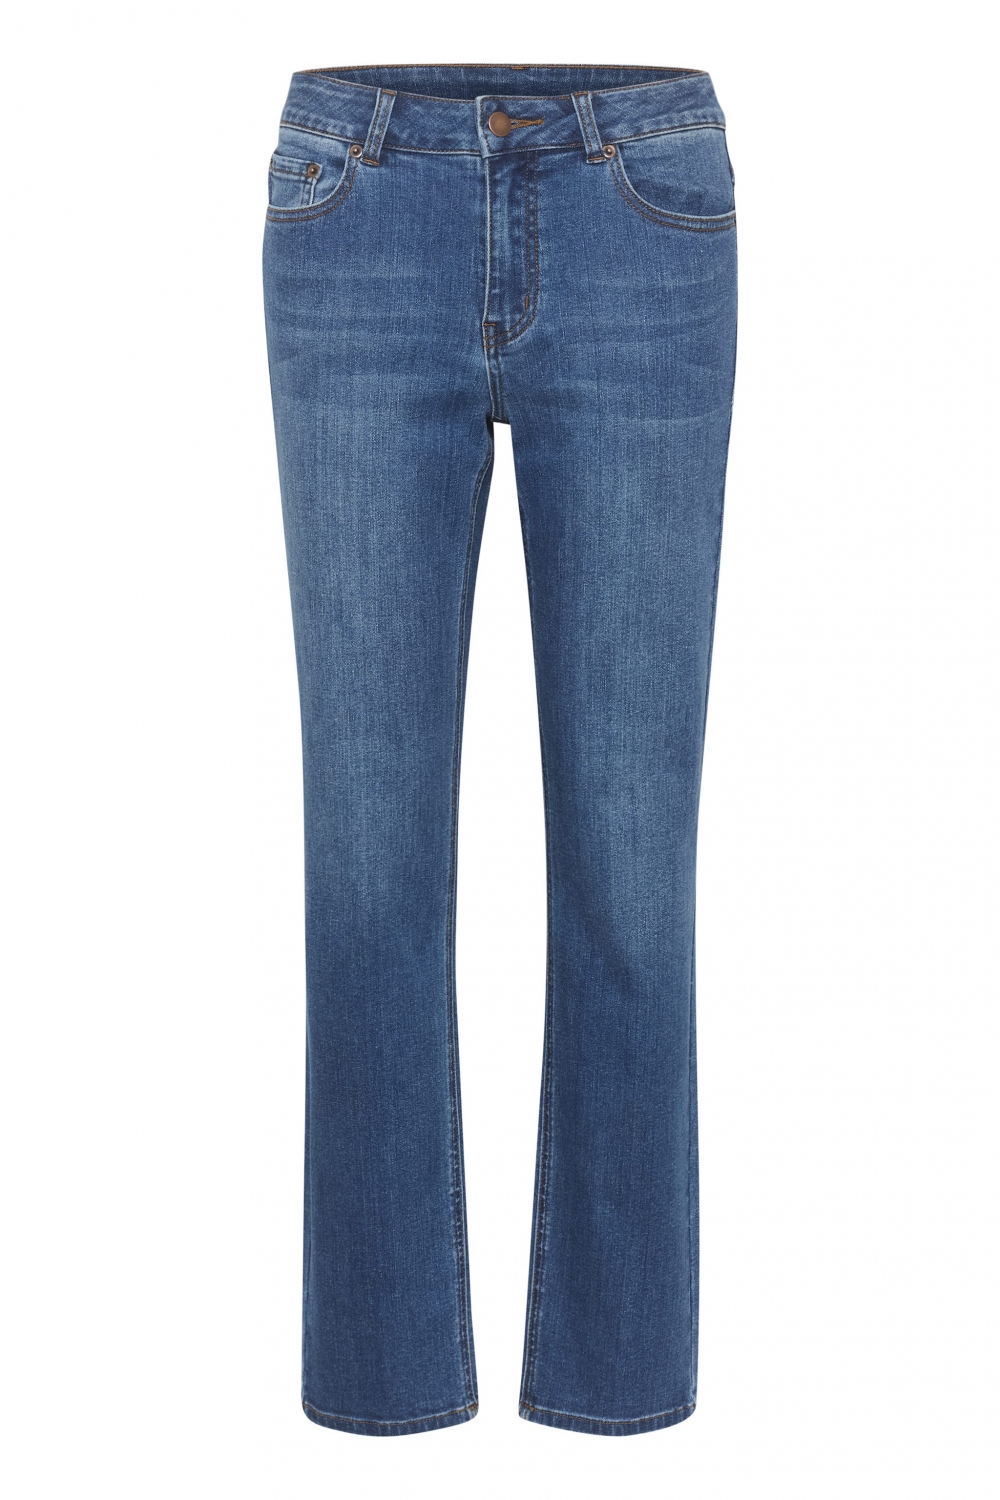 Vår favorittjeans har nå kommet med rette ben! Myk jeans med full lengde, rette ben og god høyde på livet.